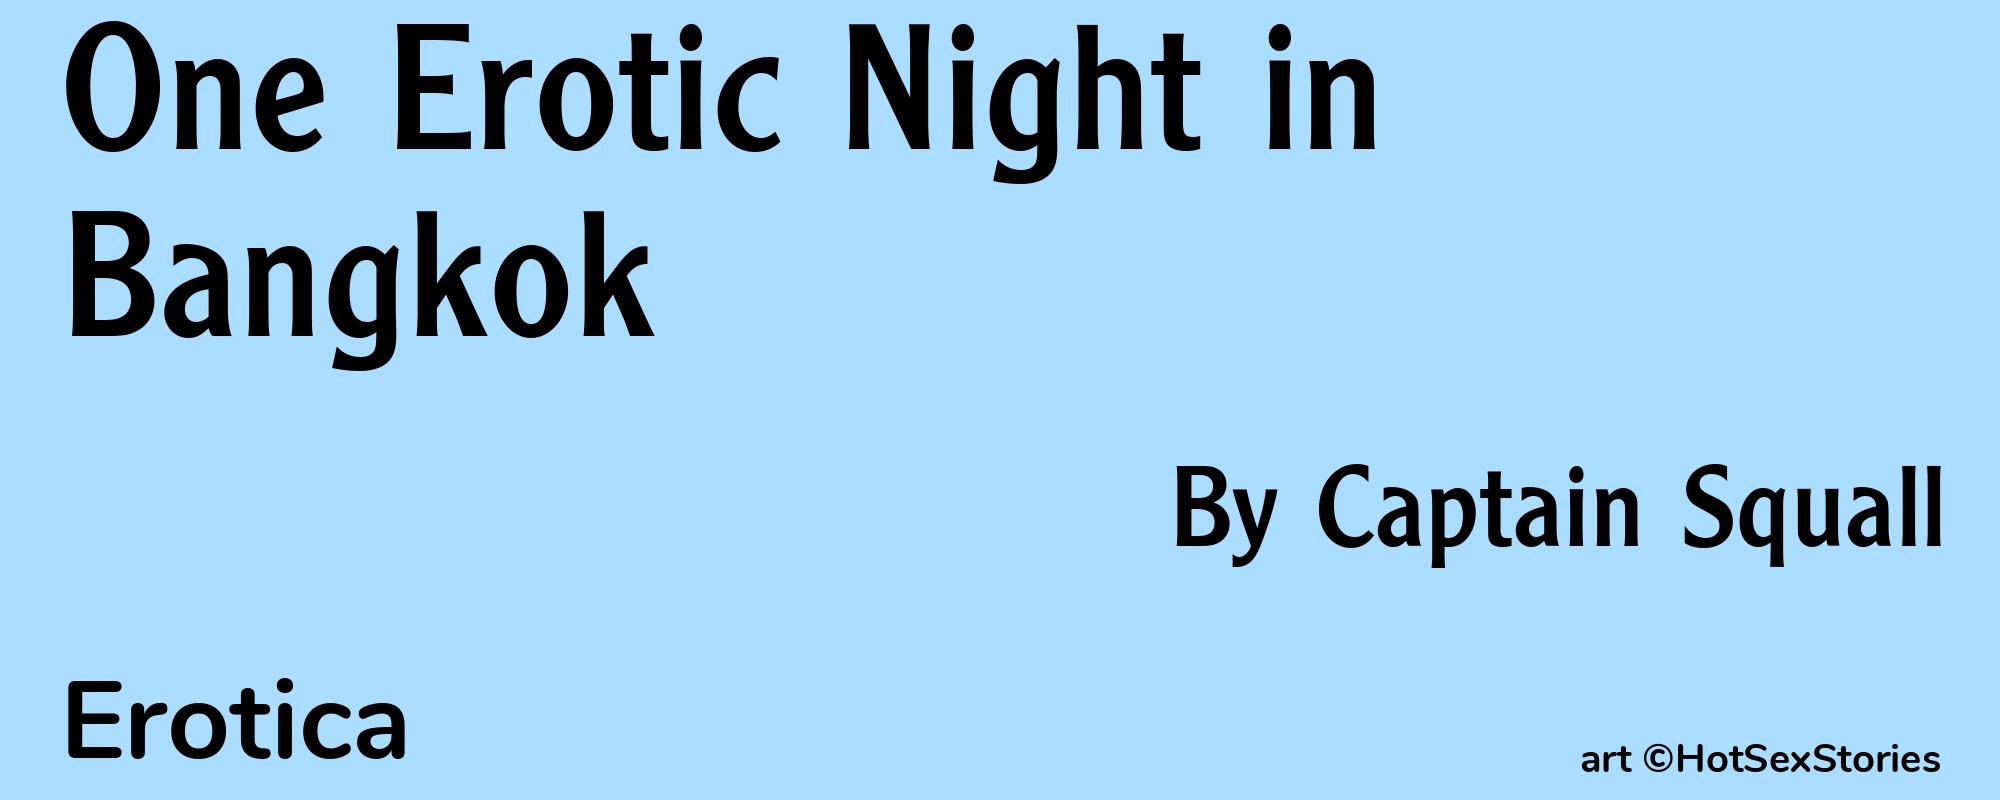 One Erotic Night in Bangkok - Cover